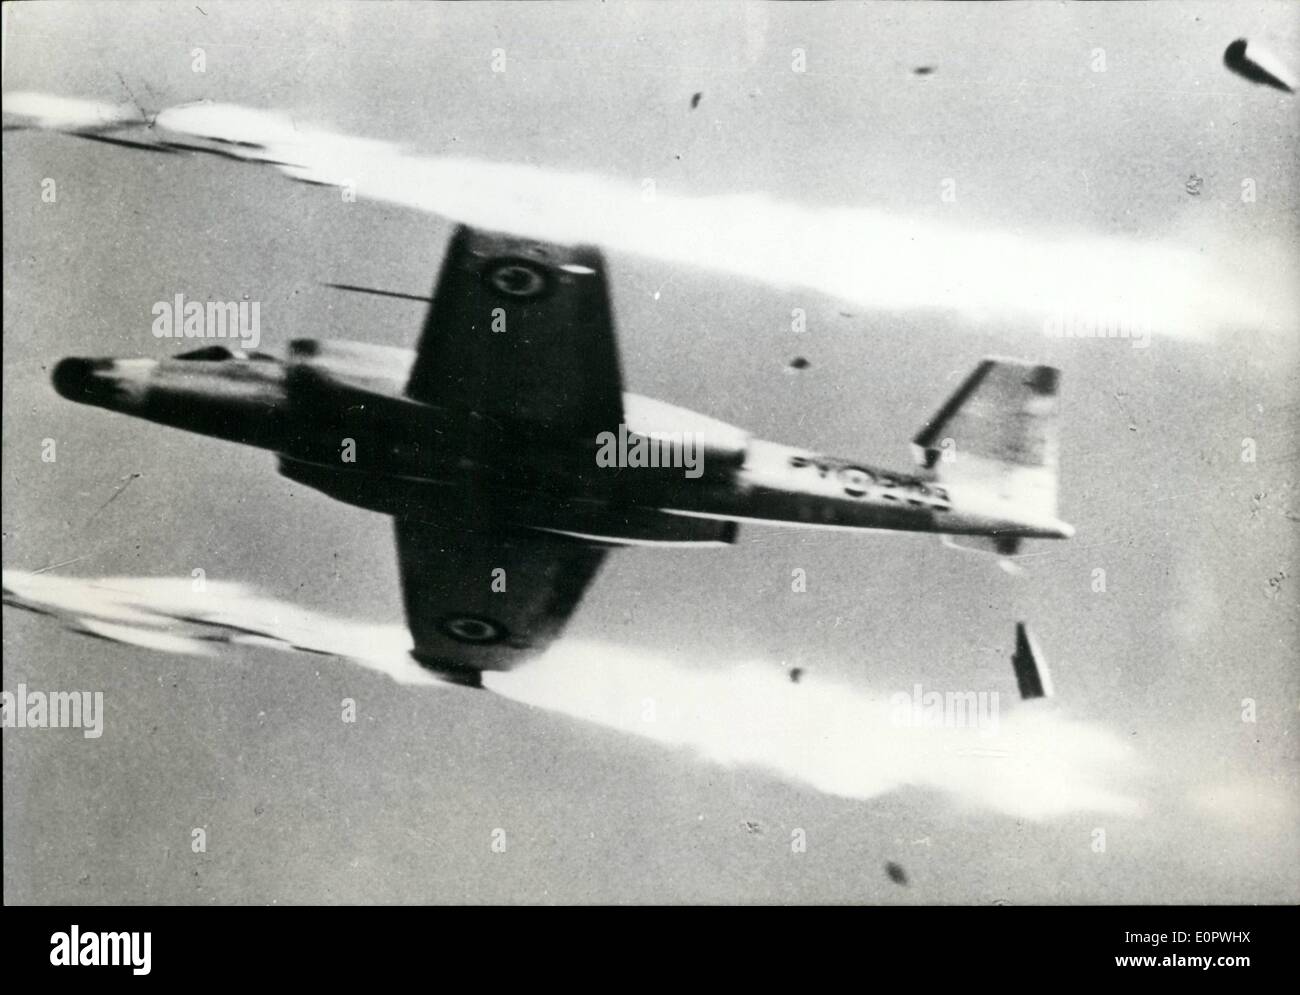 1. Januar 1957 - als schnell als A Rocket mit ihr neue der 100 MK Canuck Kämpfer Kanada jetzt gemeldet wird, die schnellste Jet der Welt zu besitzen. Ausgestattet mit Maschinengewehren und Raketen unterstützt das neue Flugzeug erreichen die Höhe von 40.000 Fuß in Rekordzeit. Ops: - die neue kanadische CF - 100MK. 4 b Canuck auf Hochtouren. Stockfoto